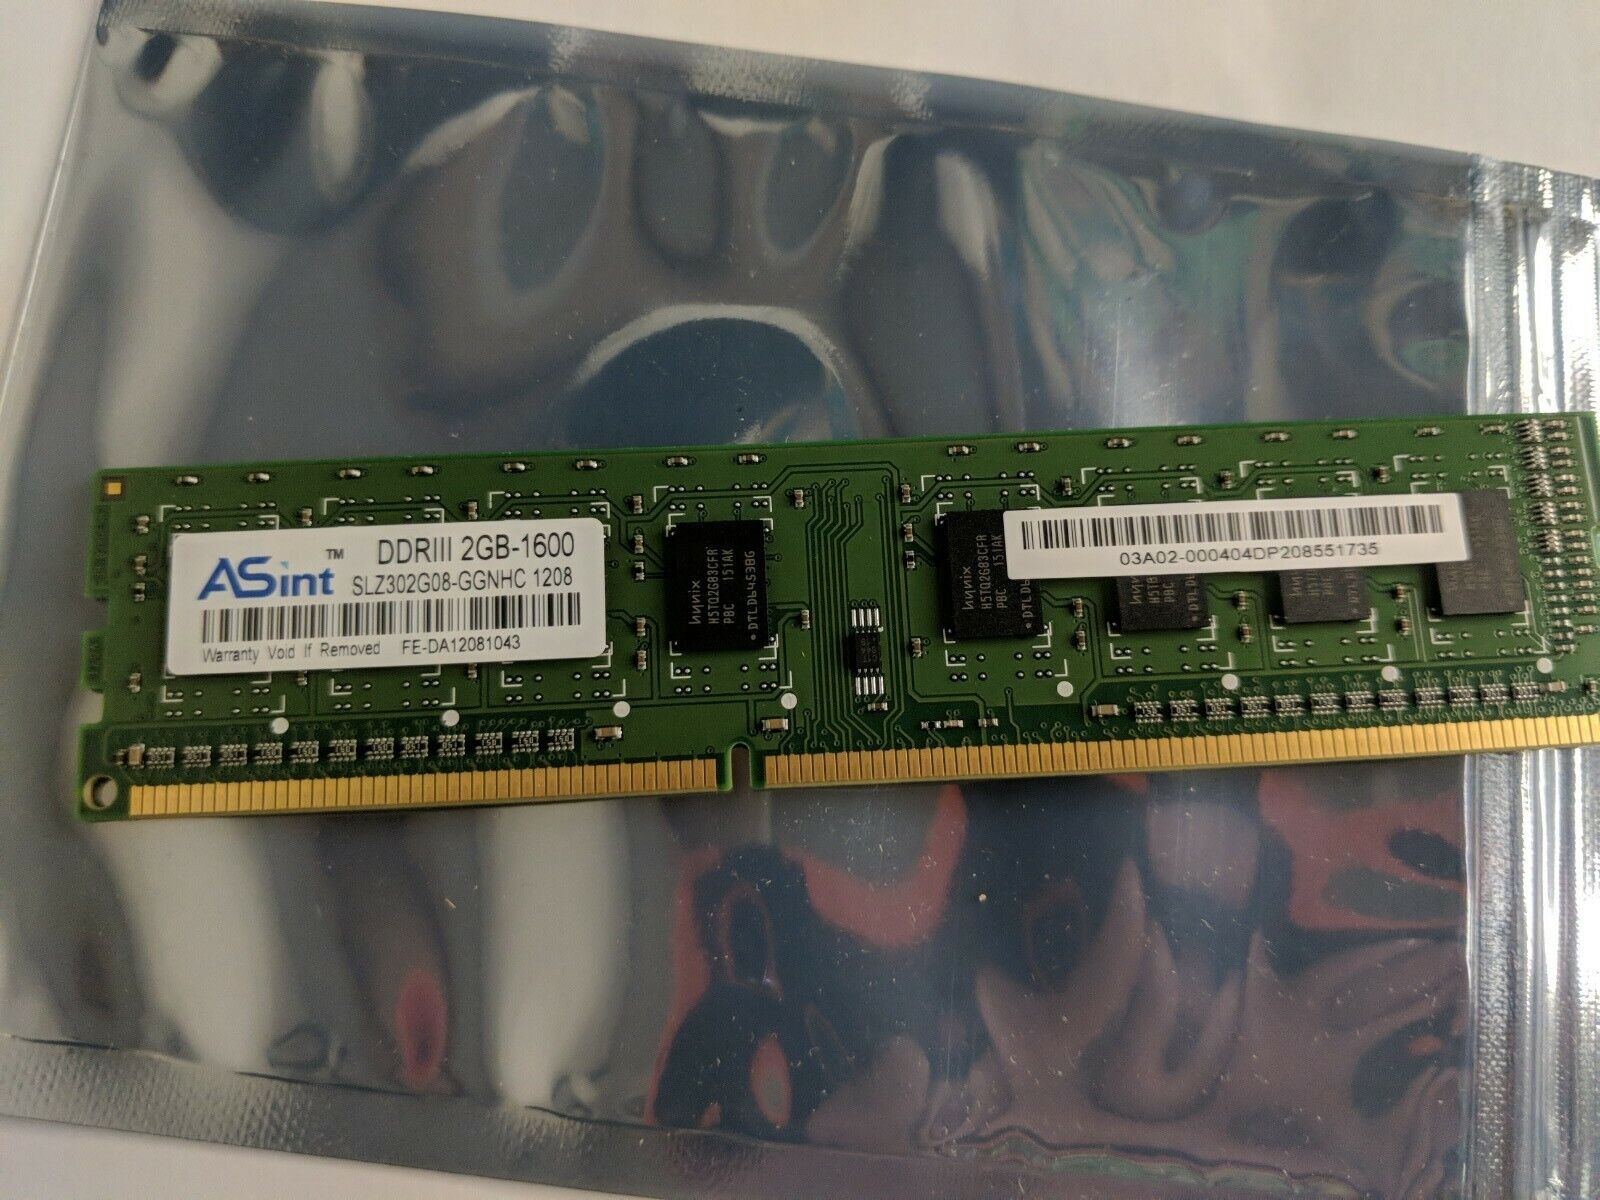 ASint DDR3 DDRIII 2GB-1600 SLZ302G08-GGNHC 1208 CH  RAM Desktop PC tested workin